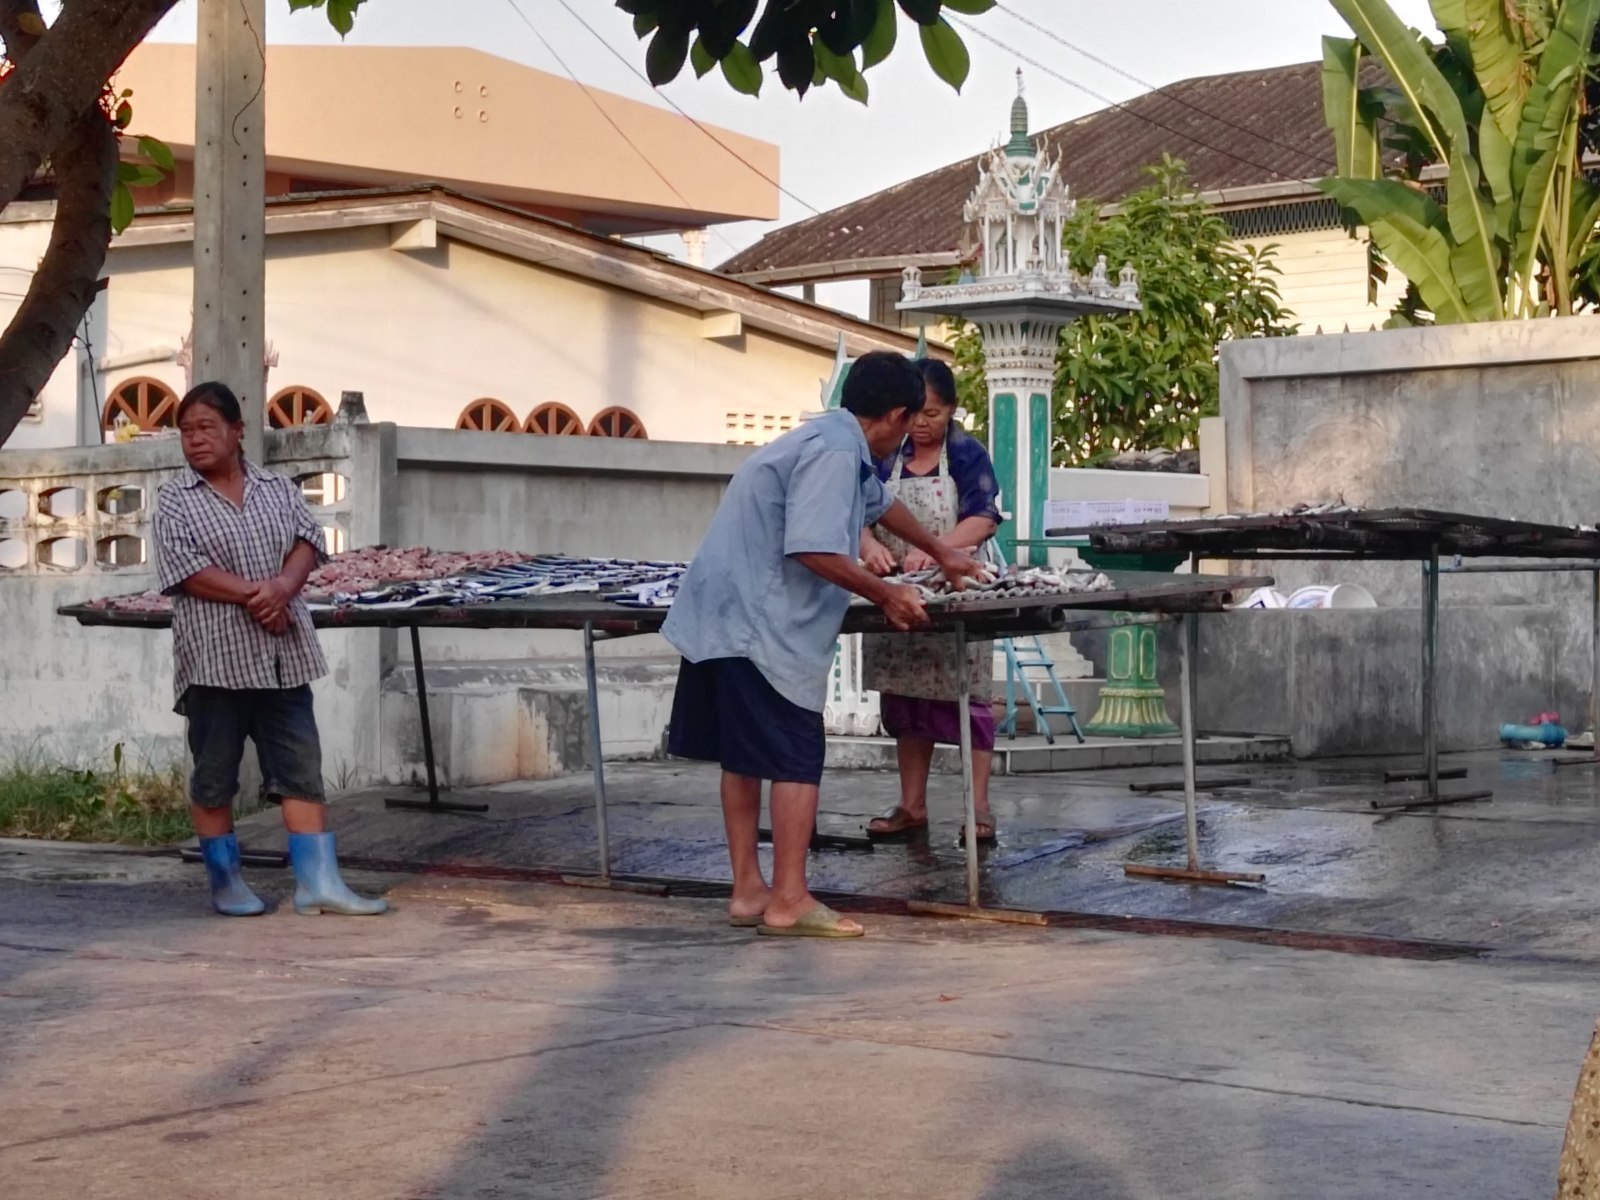 Ano, jak jsme tušili, vzbudili jsme se mezi sušáky s rybami, Khlong Van, Thajsko